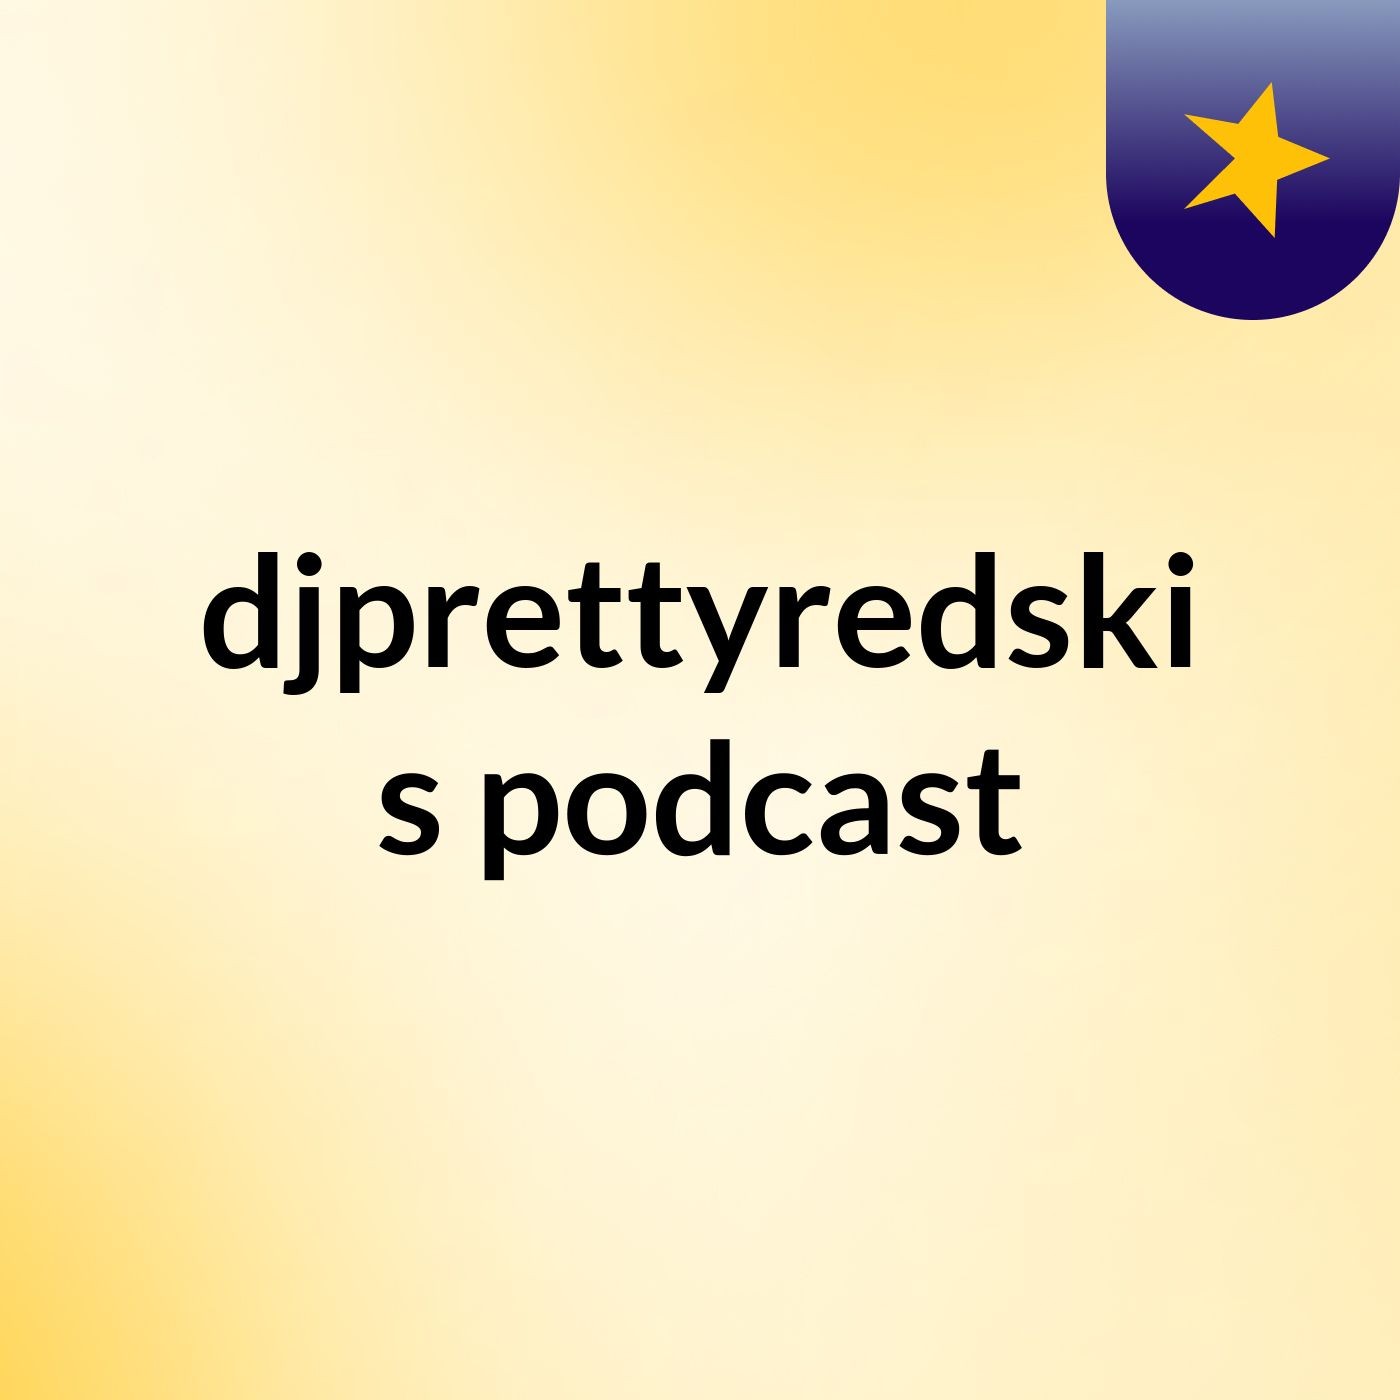 Playing music - djprettyredski's podcast